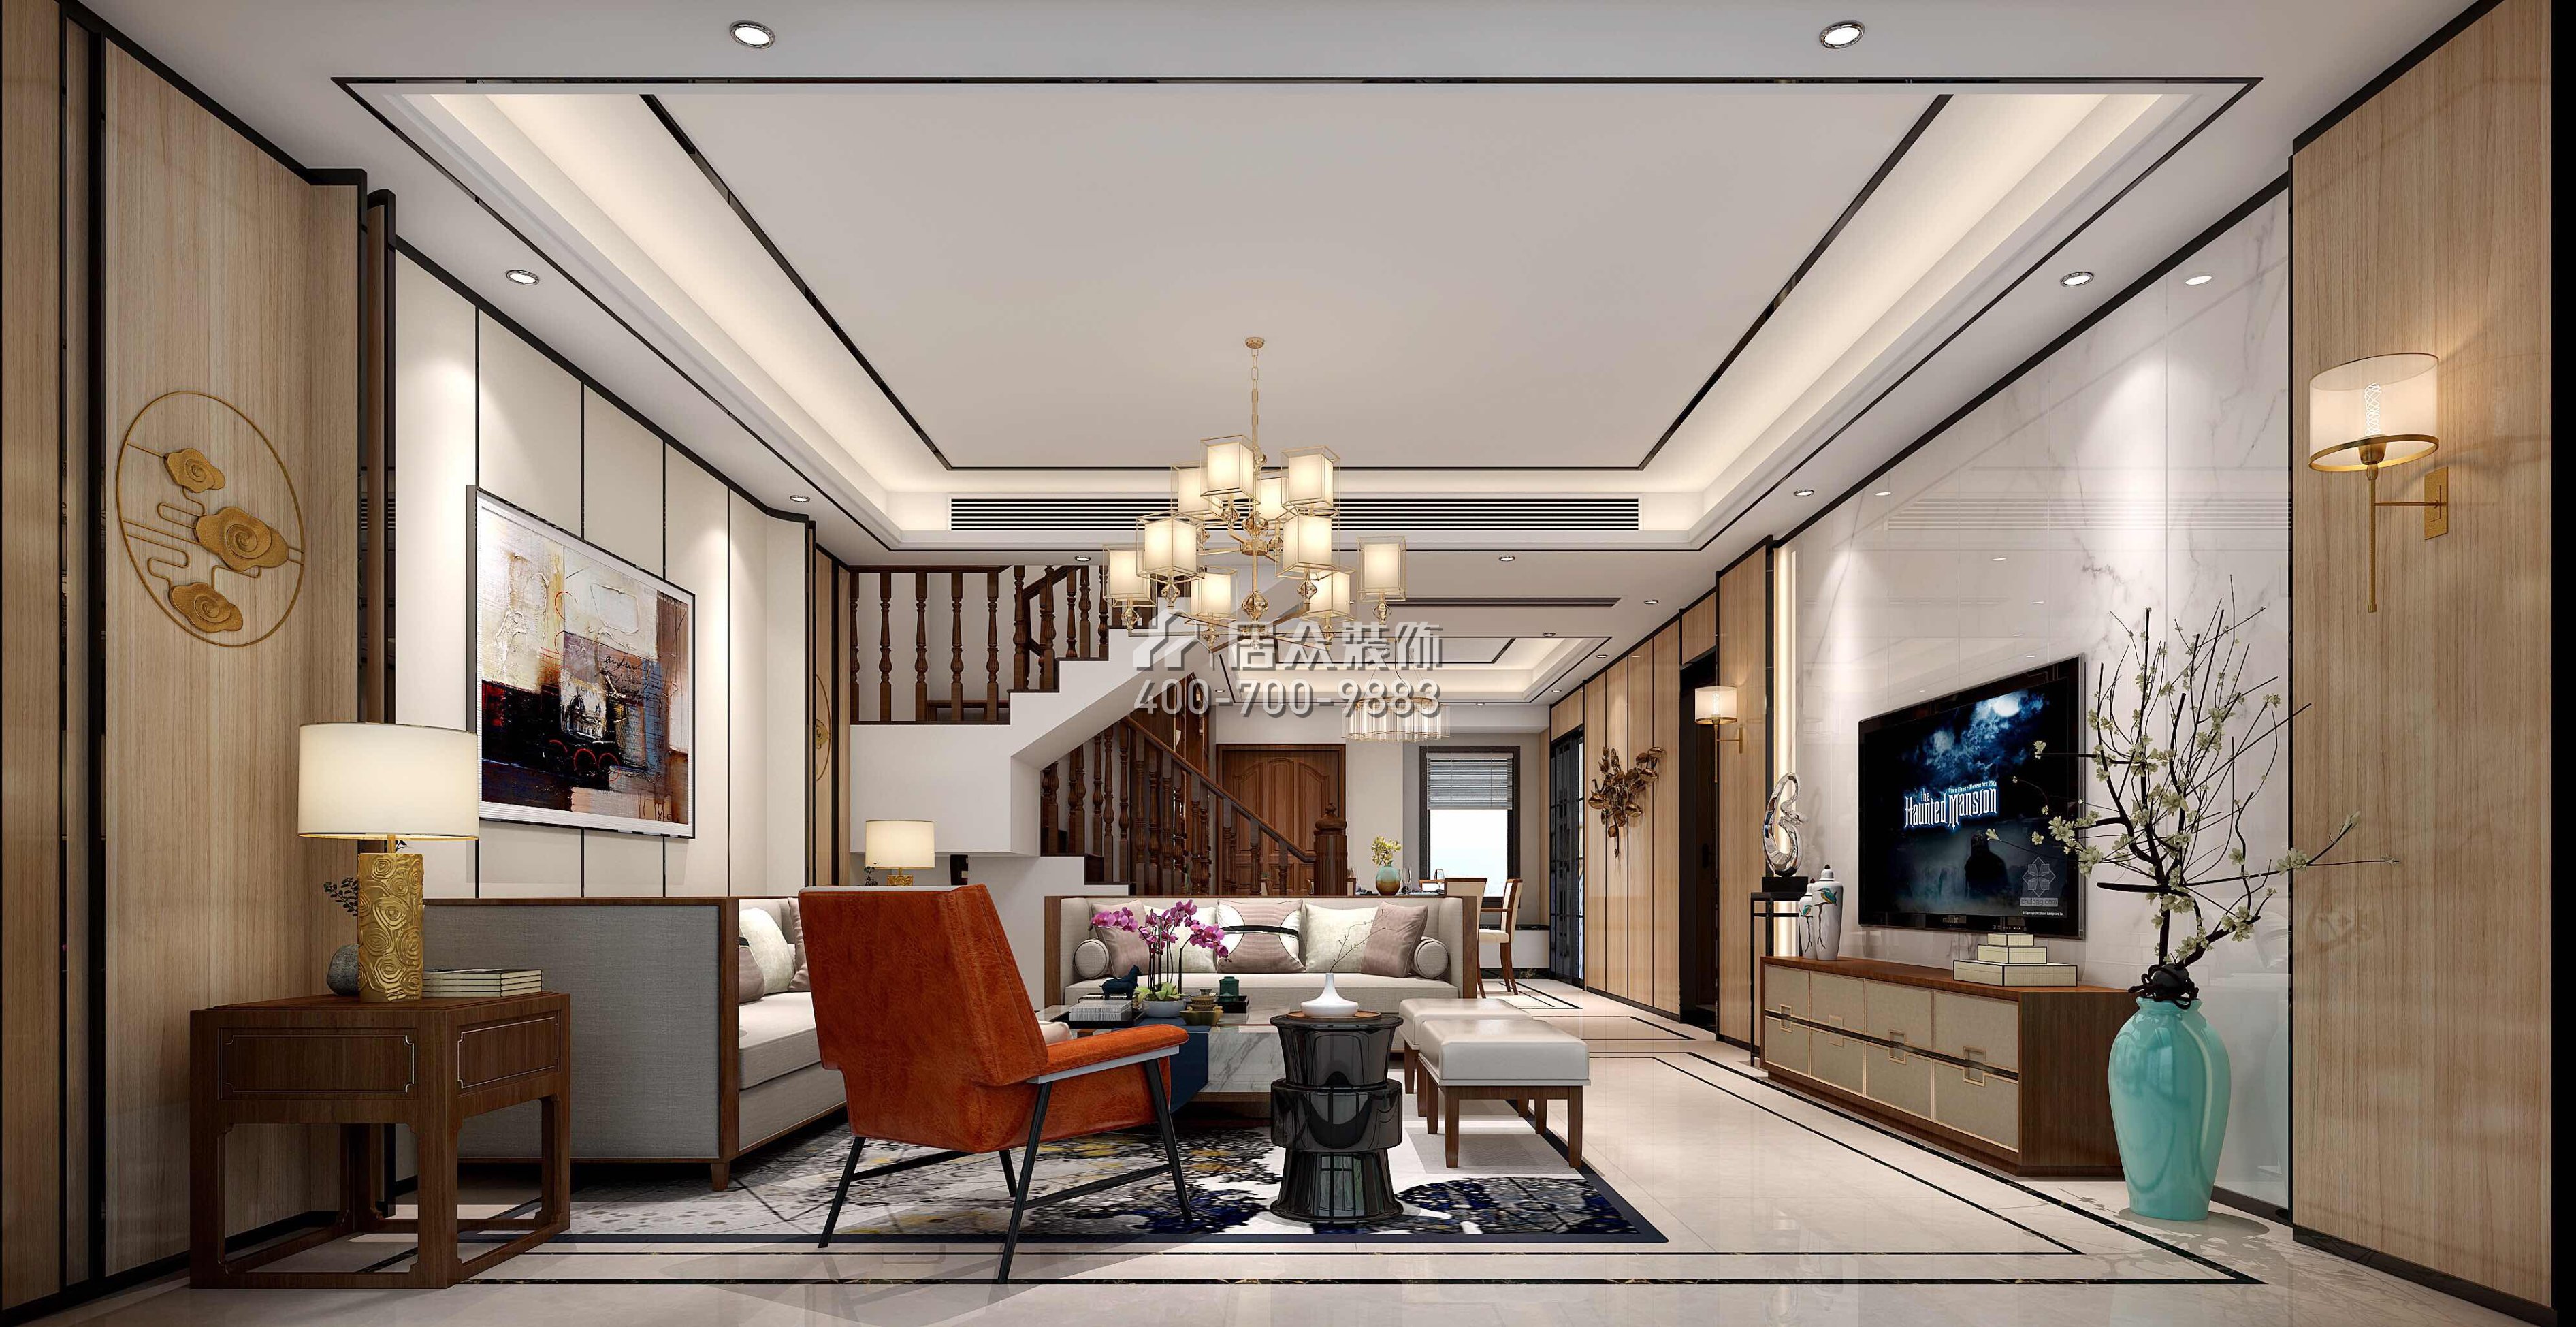 星河丹堤242平方米中式风格复式户型客厅装修效果图